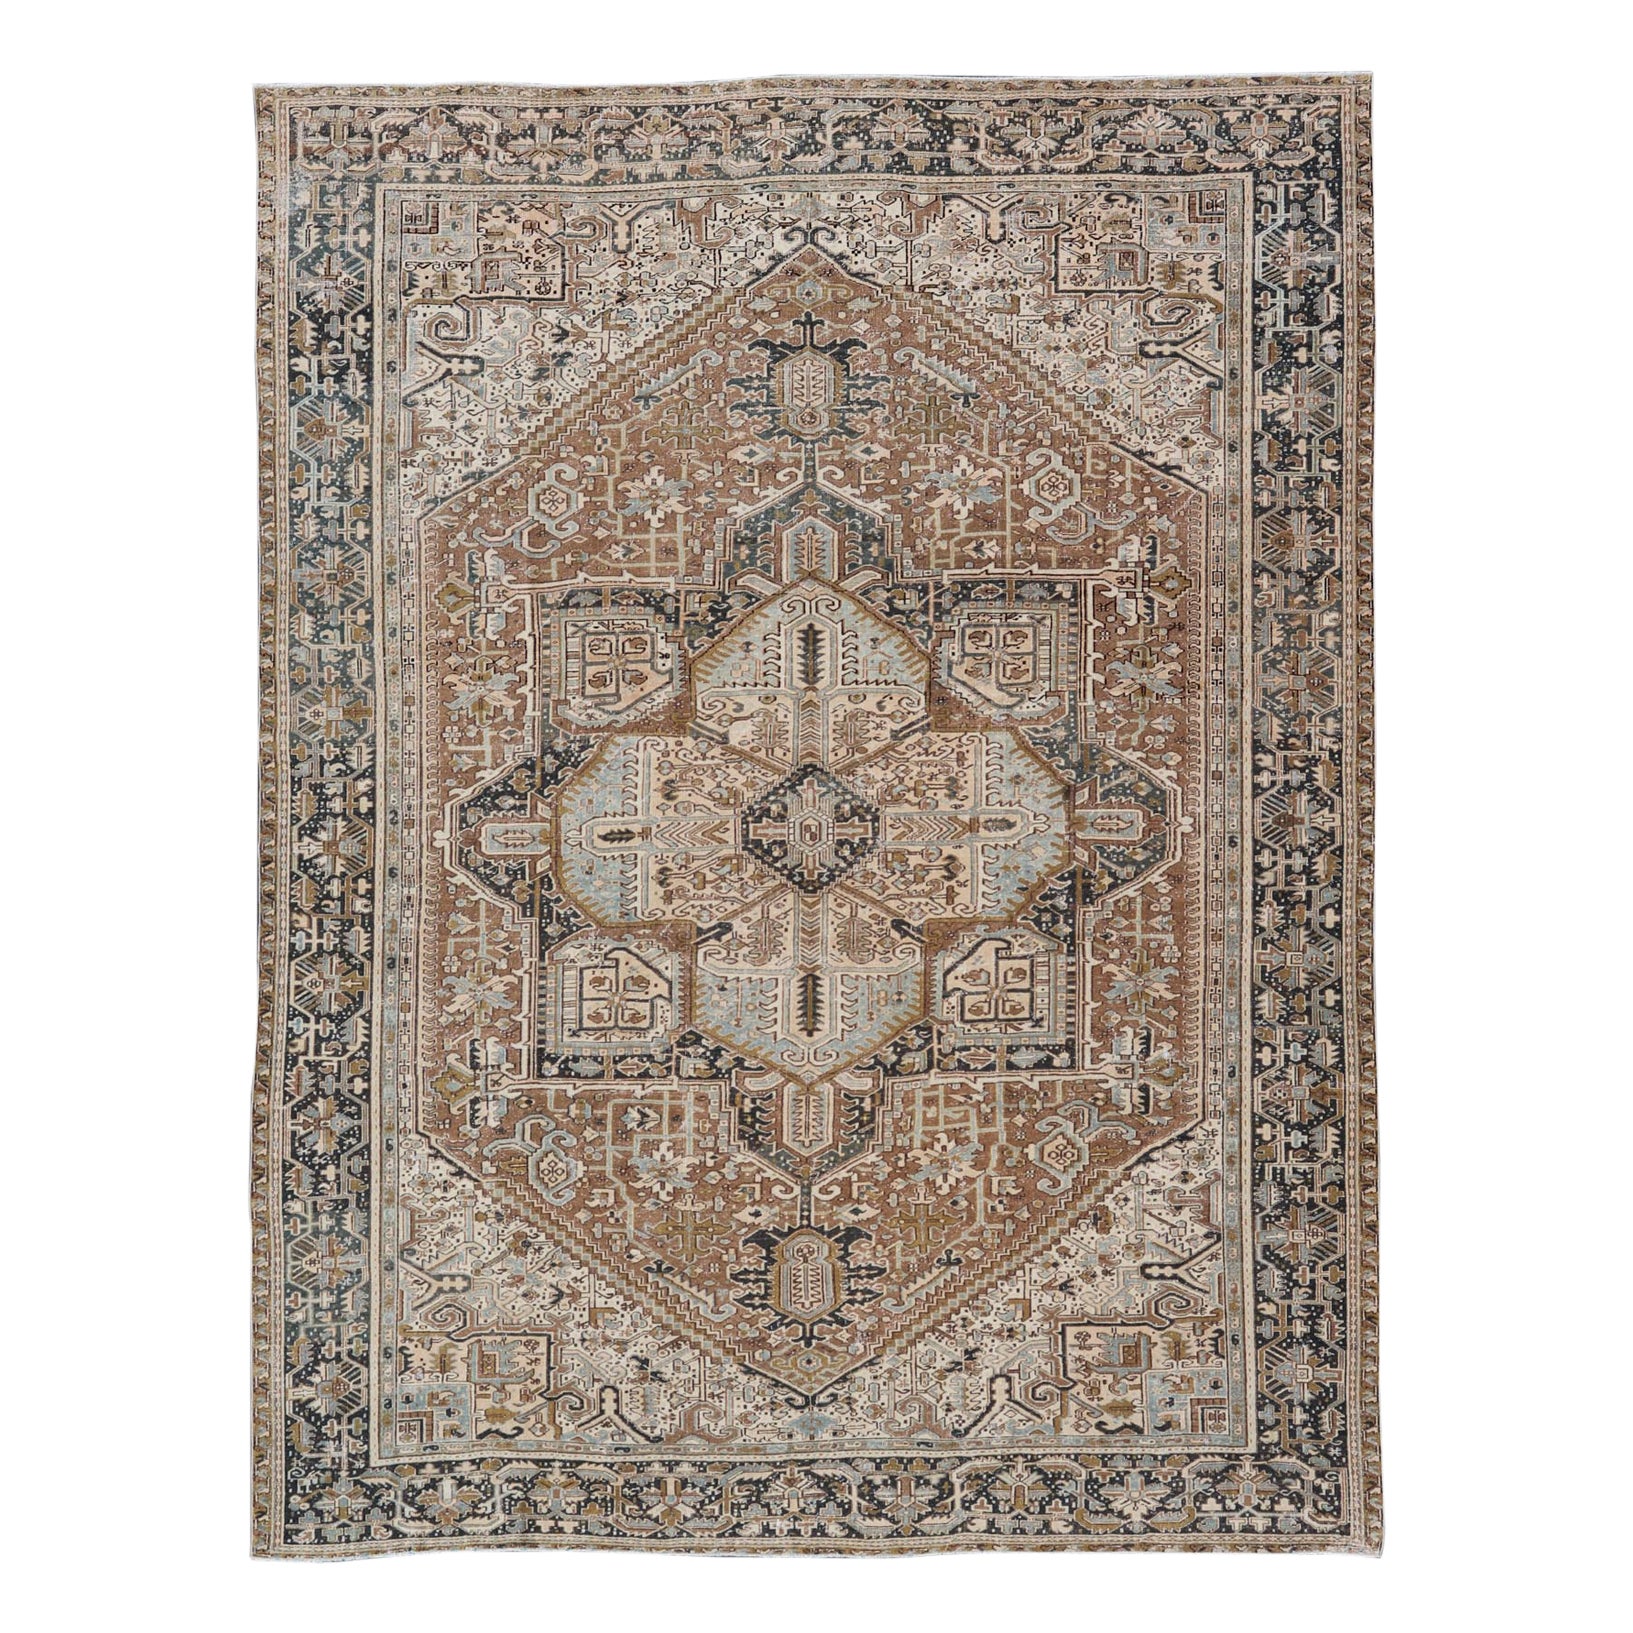 Antiker persischer Heriz-Teppich mit geometrischem Muster in Blau, Tan, Creme und Braun